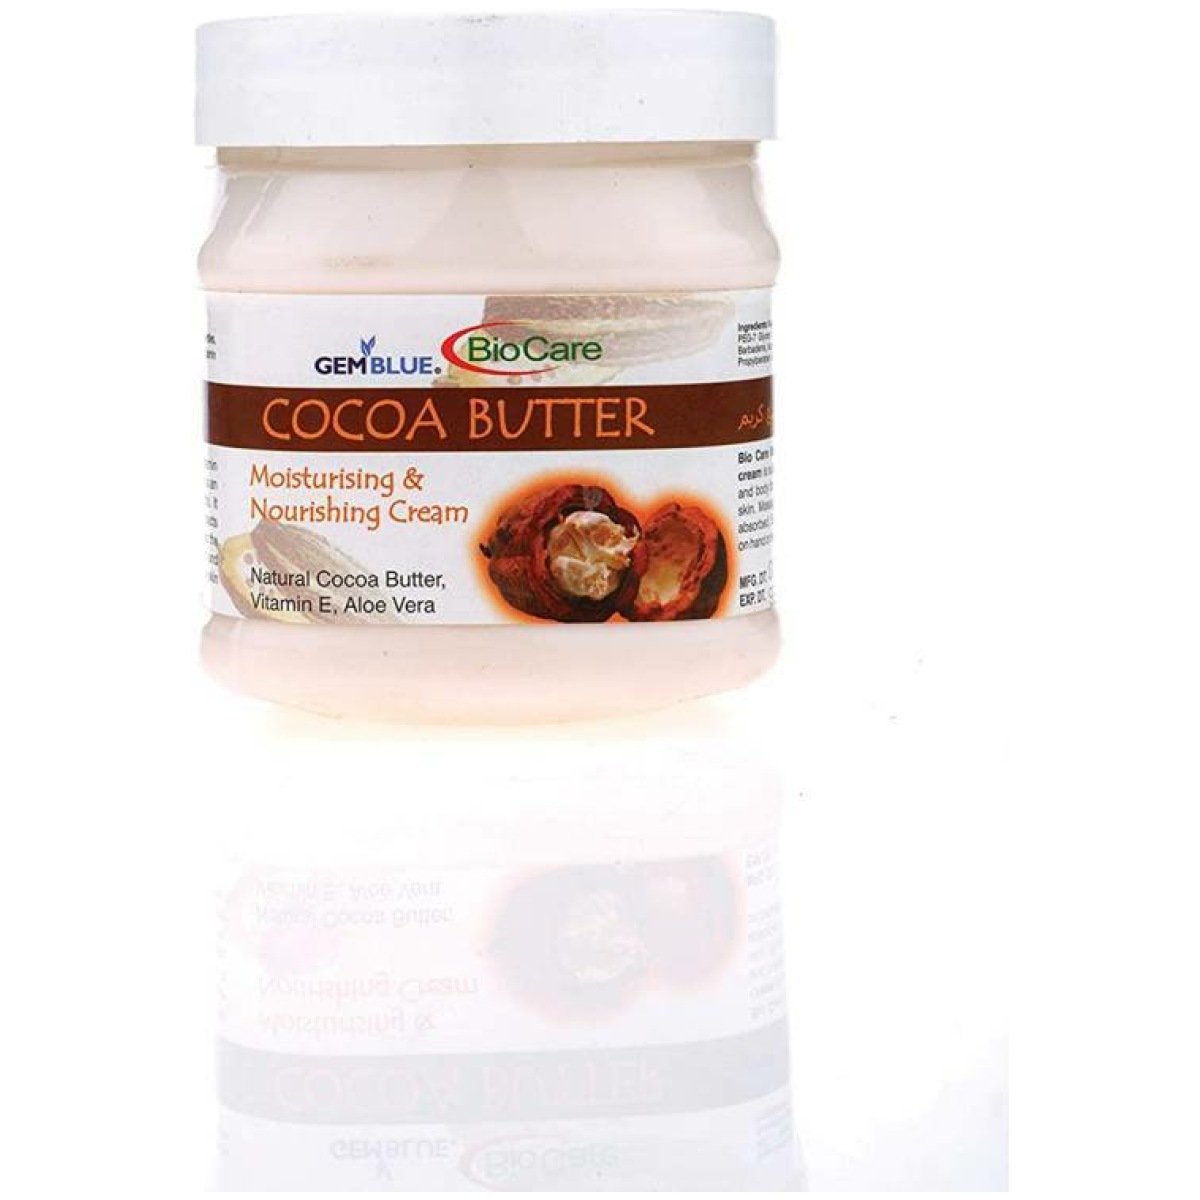   Gemblue Bioccare Cocoa Butter Cream 500ml